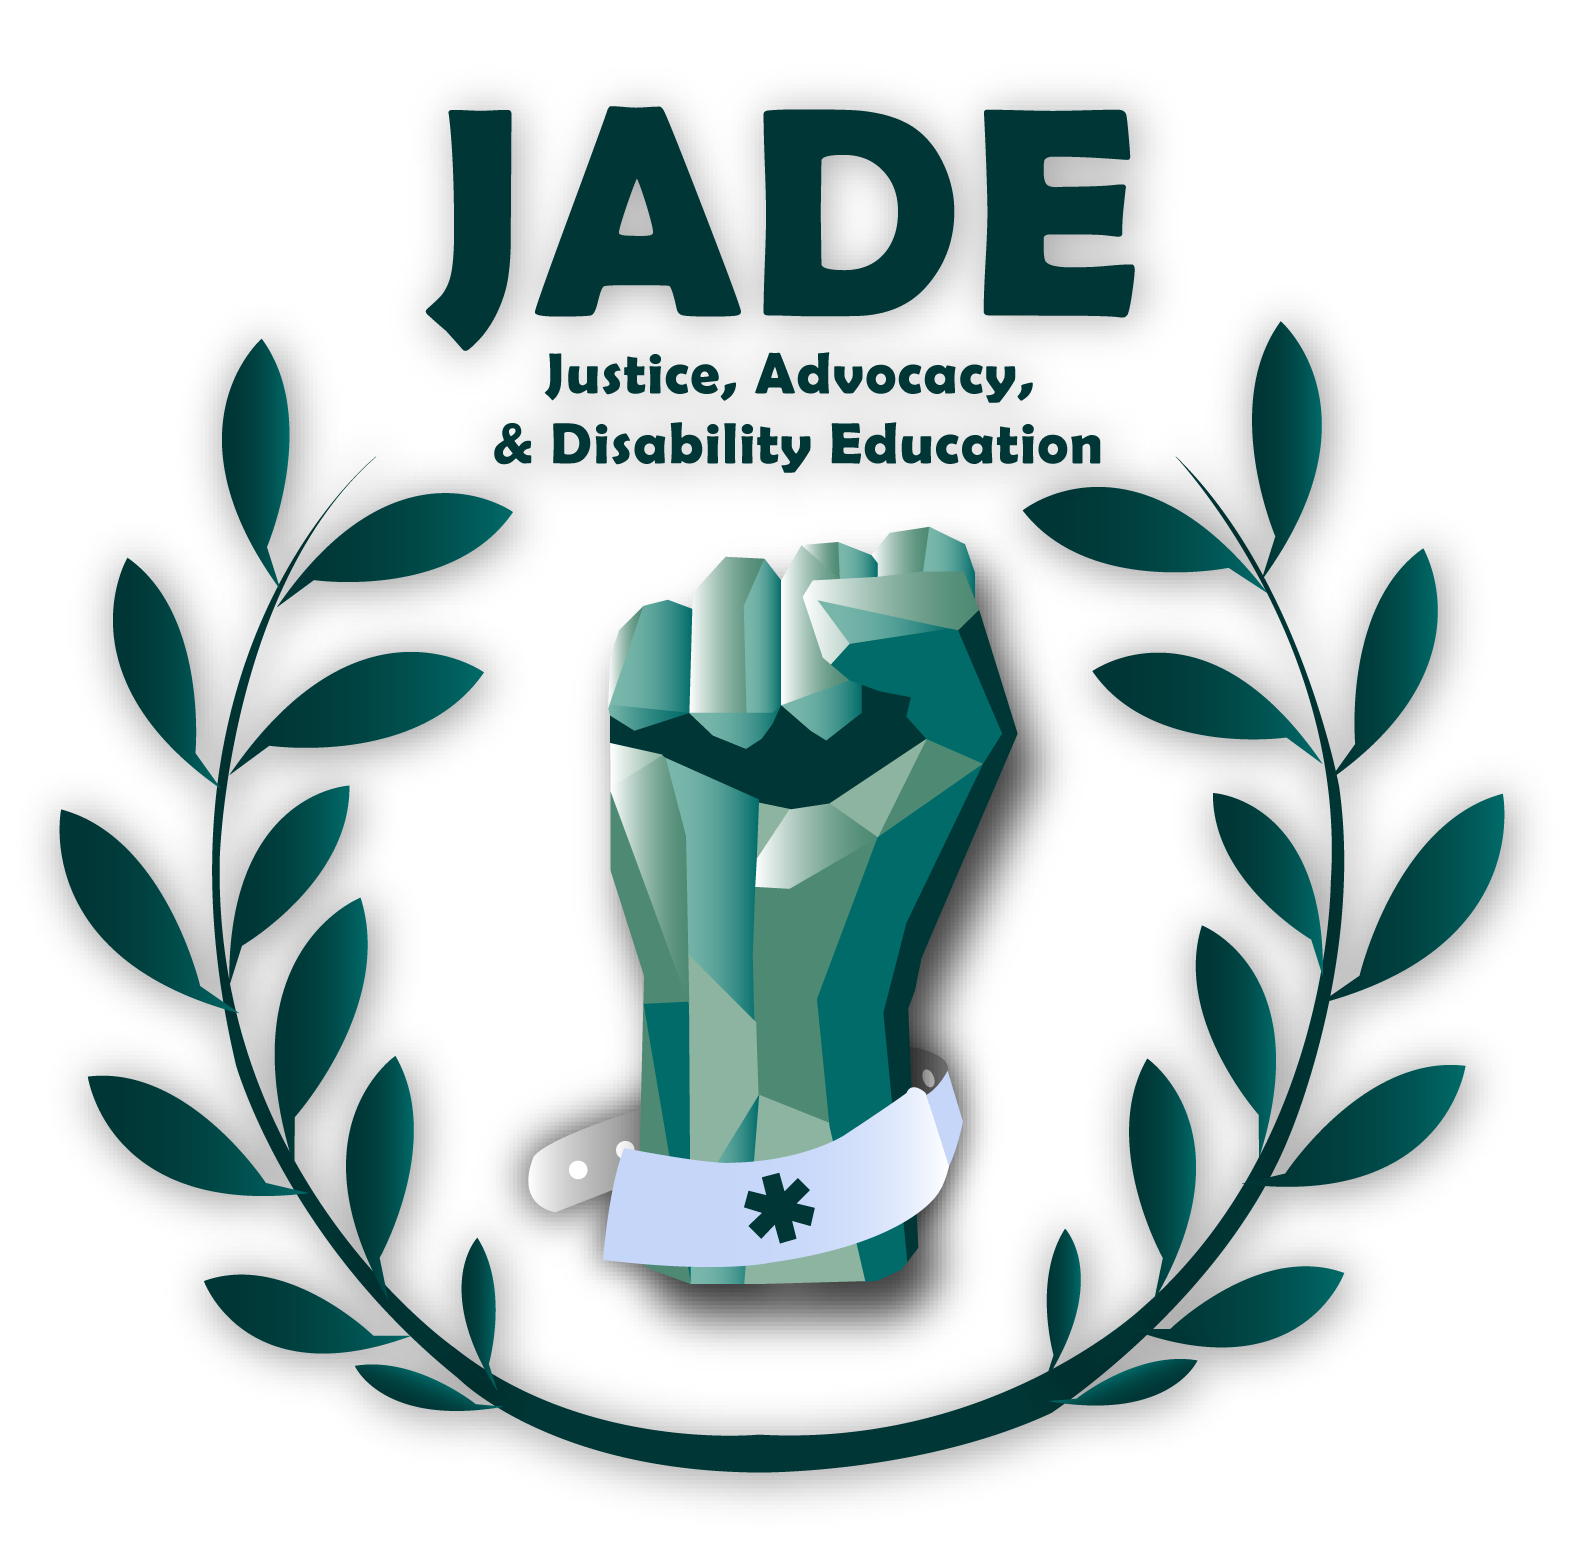 JADE Logo as placeholder